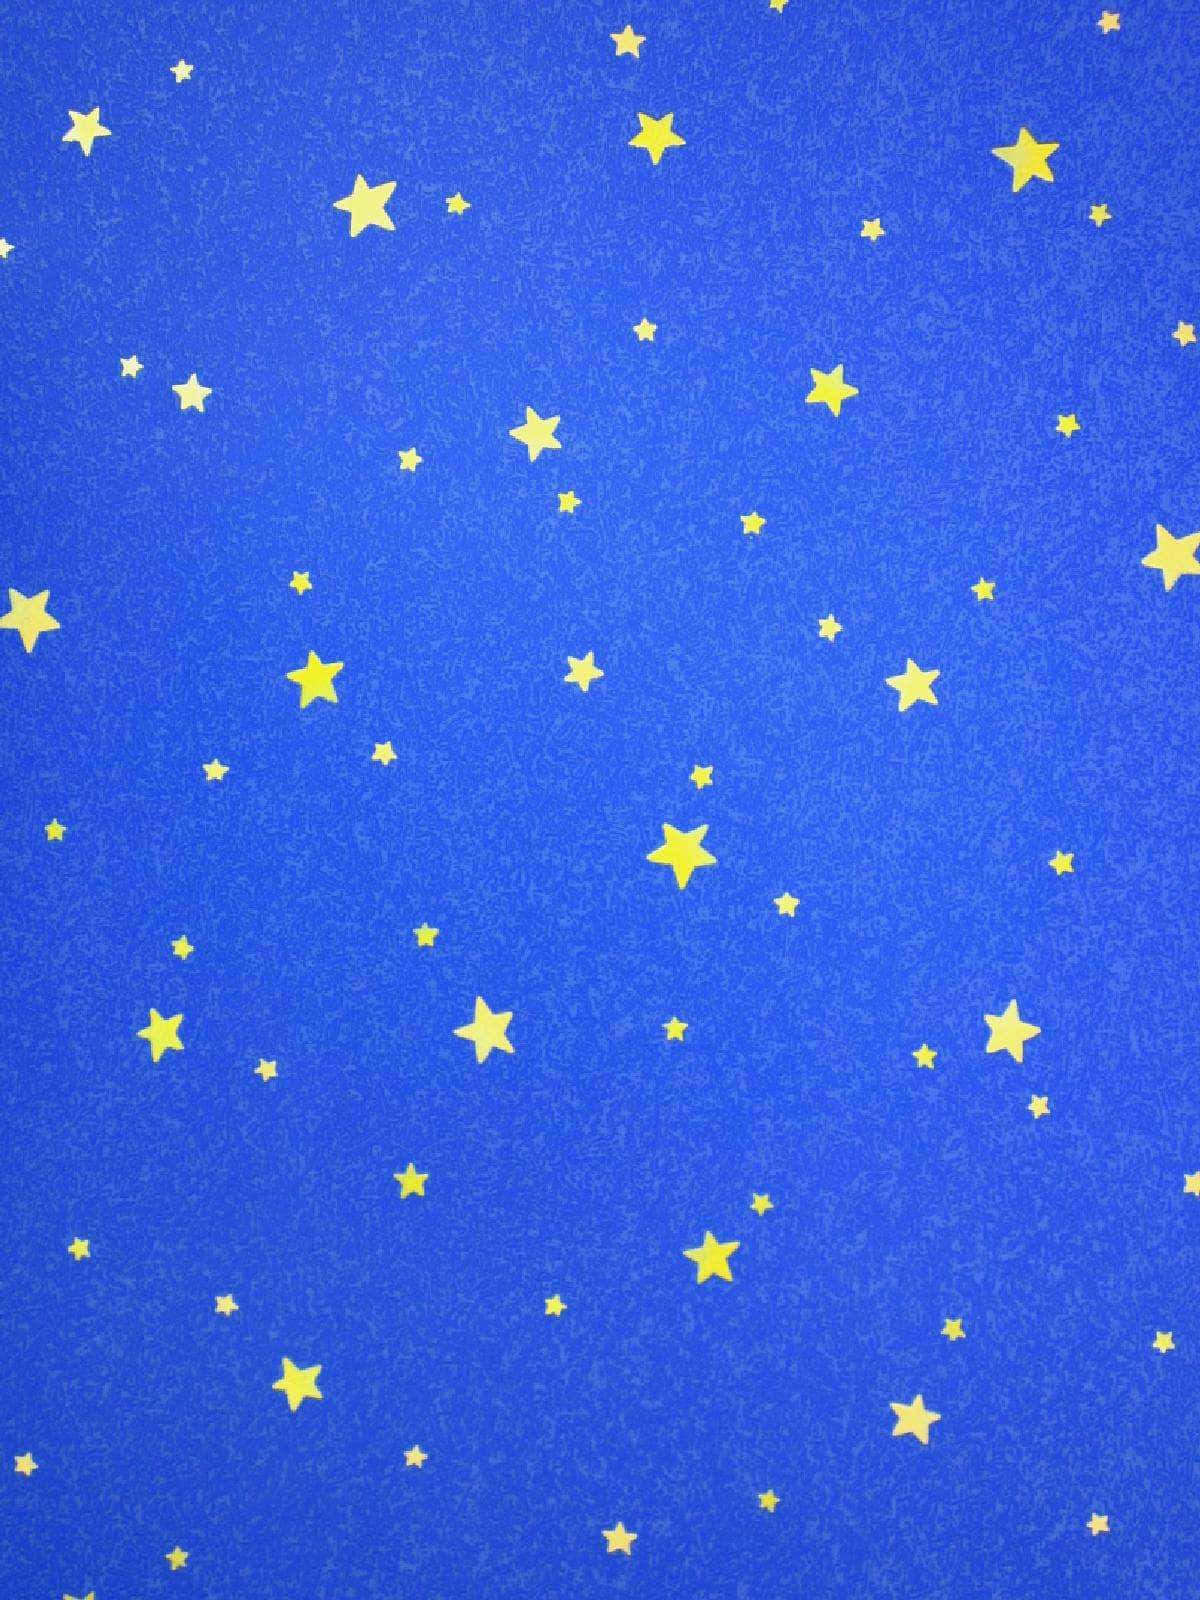 Cativantese Mágicas Estrelas Azuis Brilham No Céu Noturno. Papel de Parede